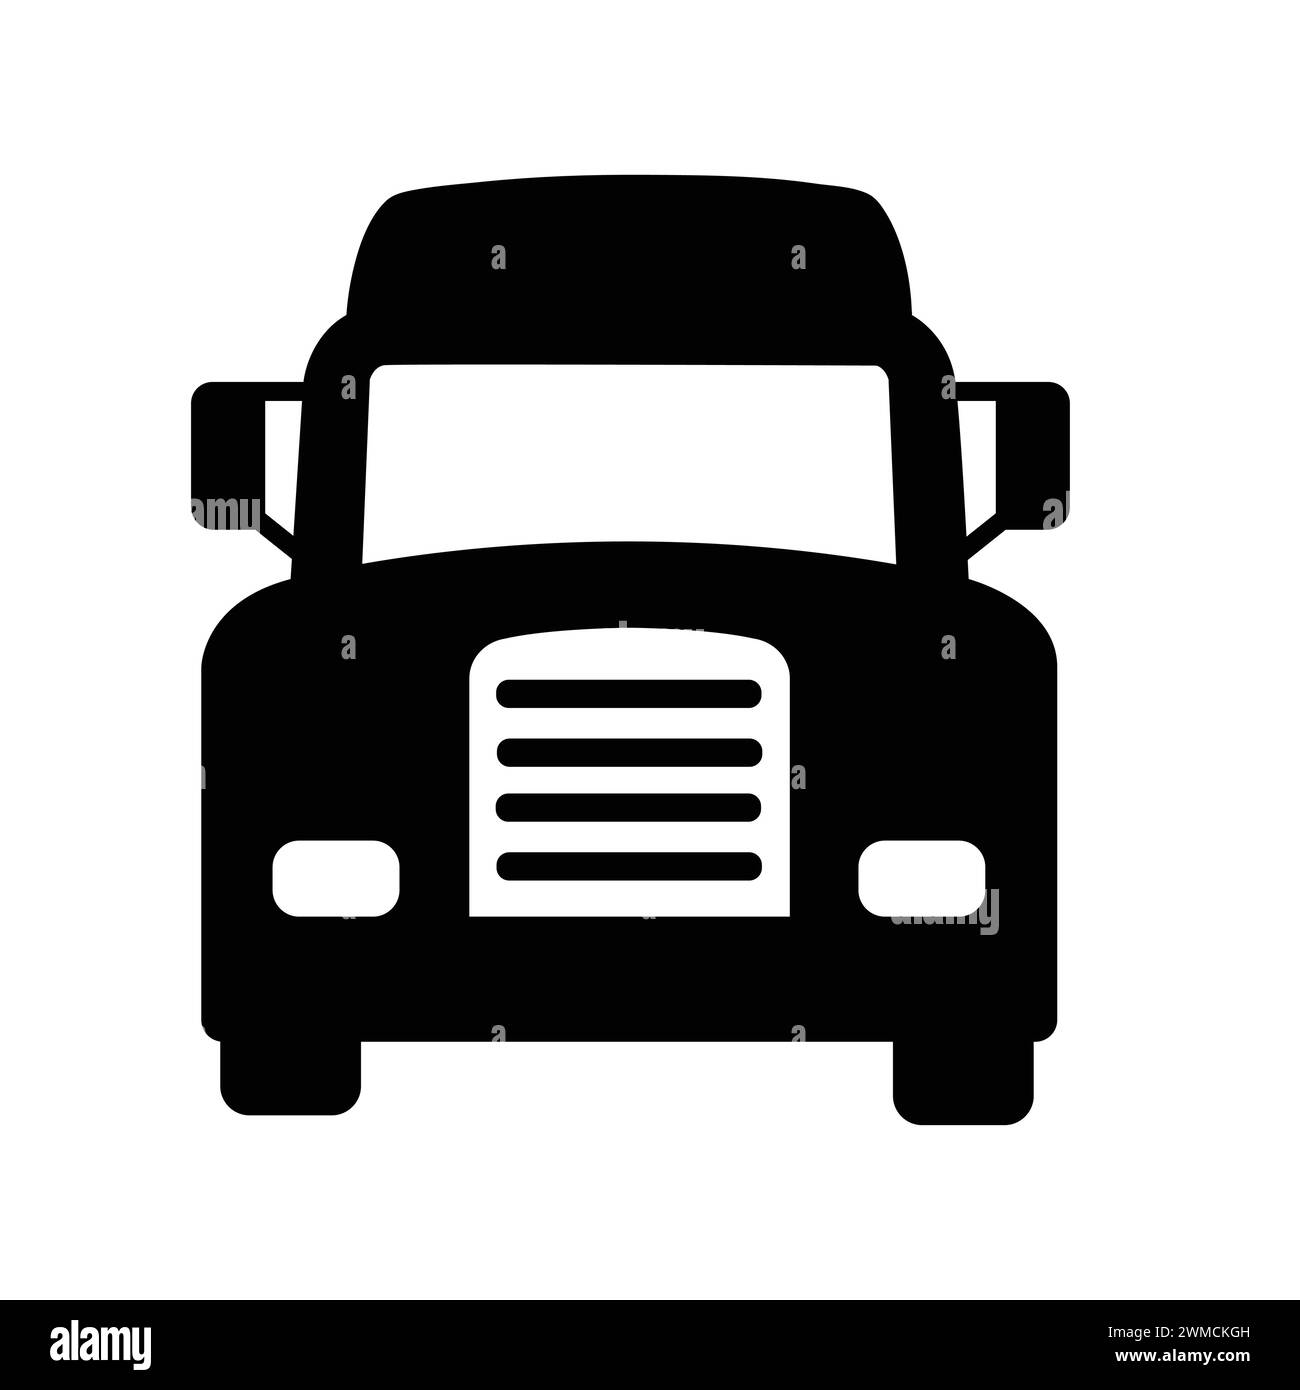 Lkw-Symbol In Der Vorderansicht. Piktogramm Lkw. Einfache Flache Grafische Abbildung. Fahrzeugtransportsymbole Silhouette Stock Vektor